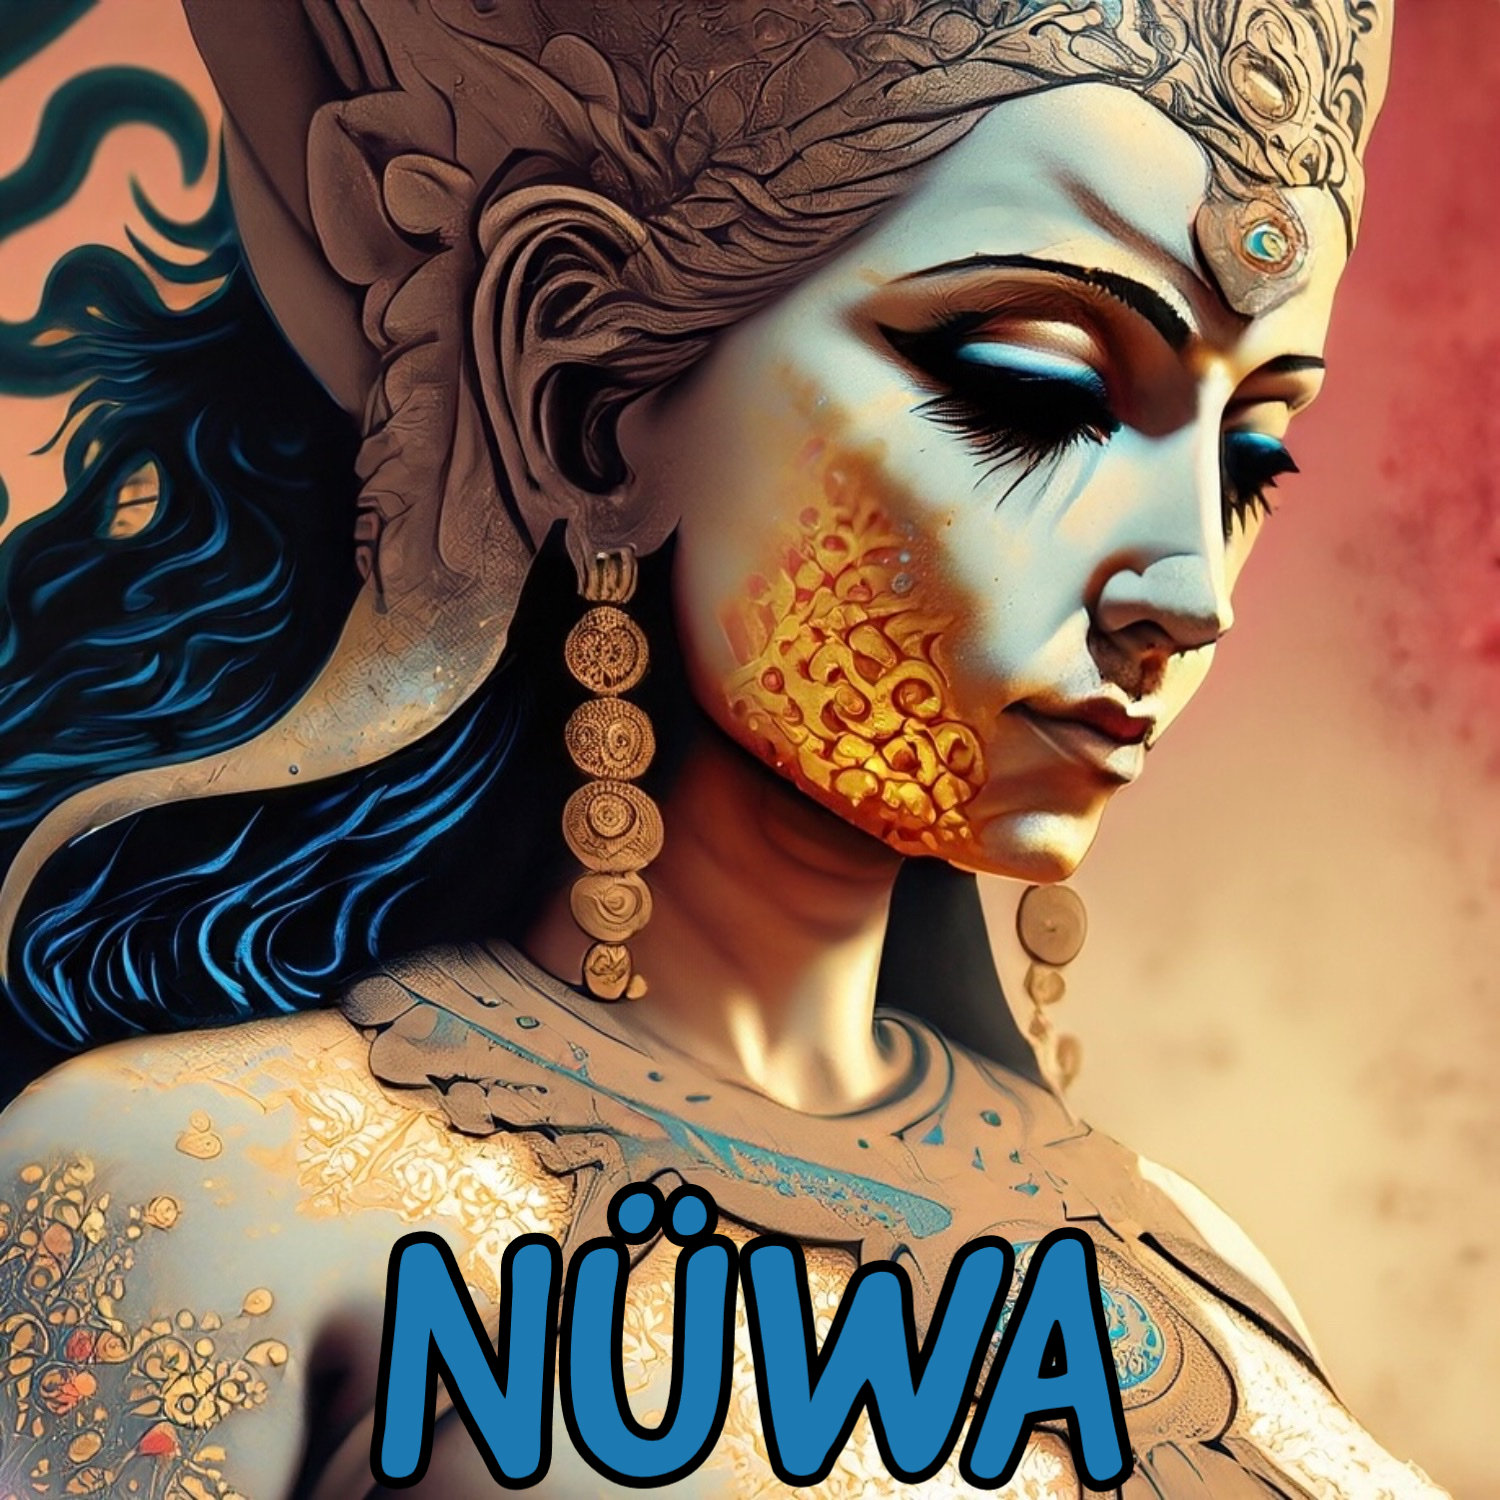 Los Mitos de Nuwa's artwork